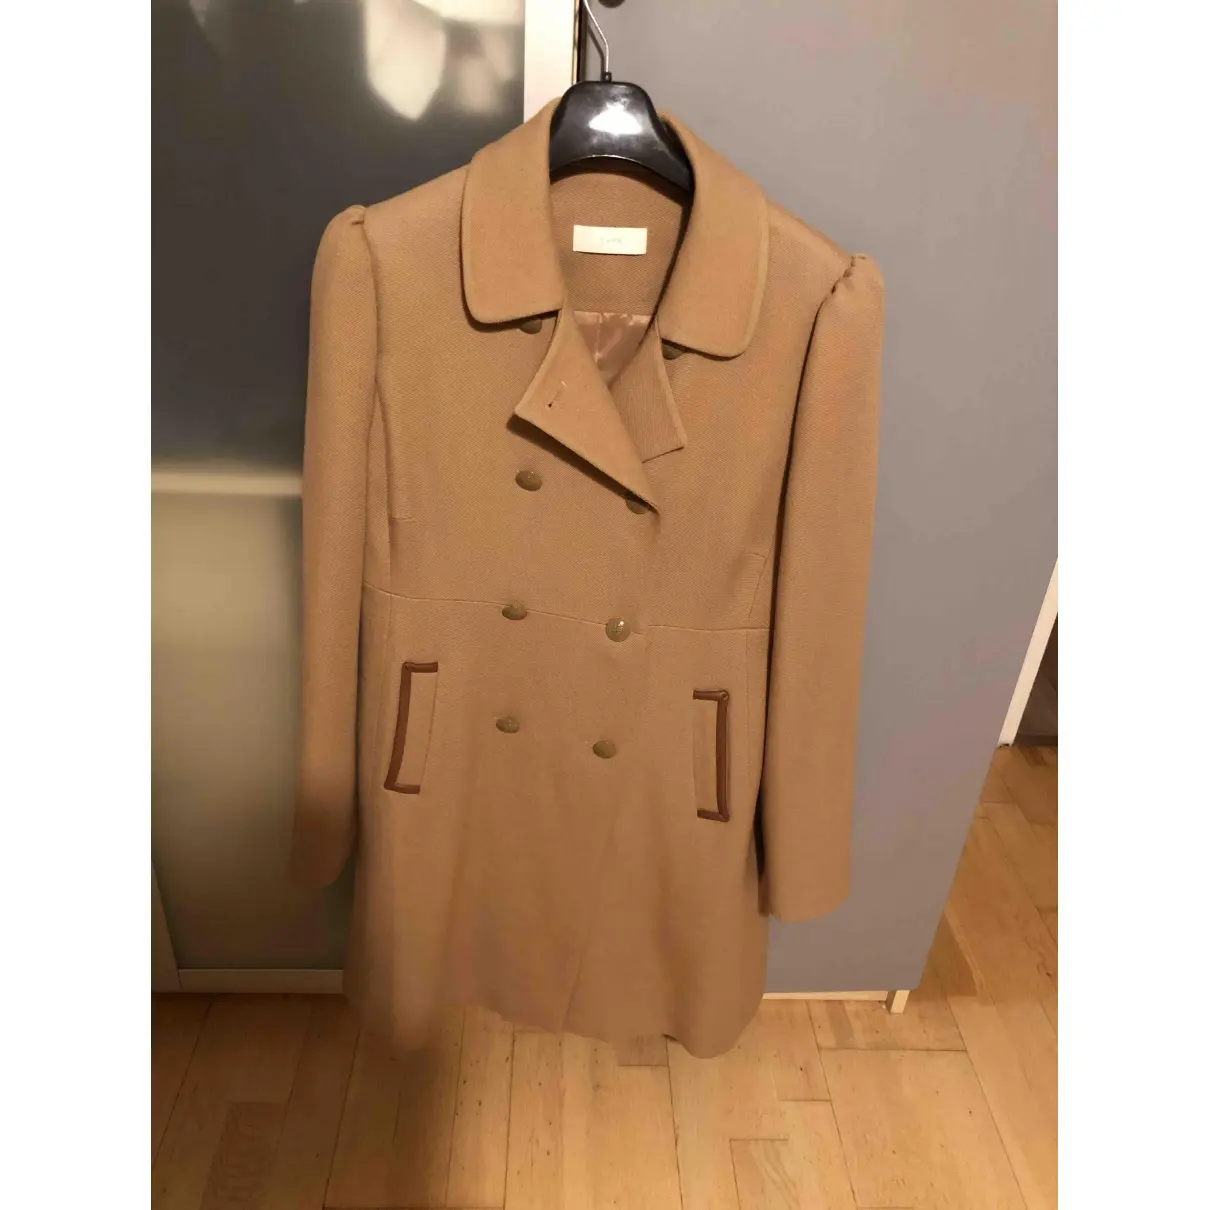 Zapa Wool coat for sale